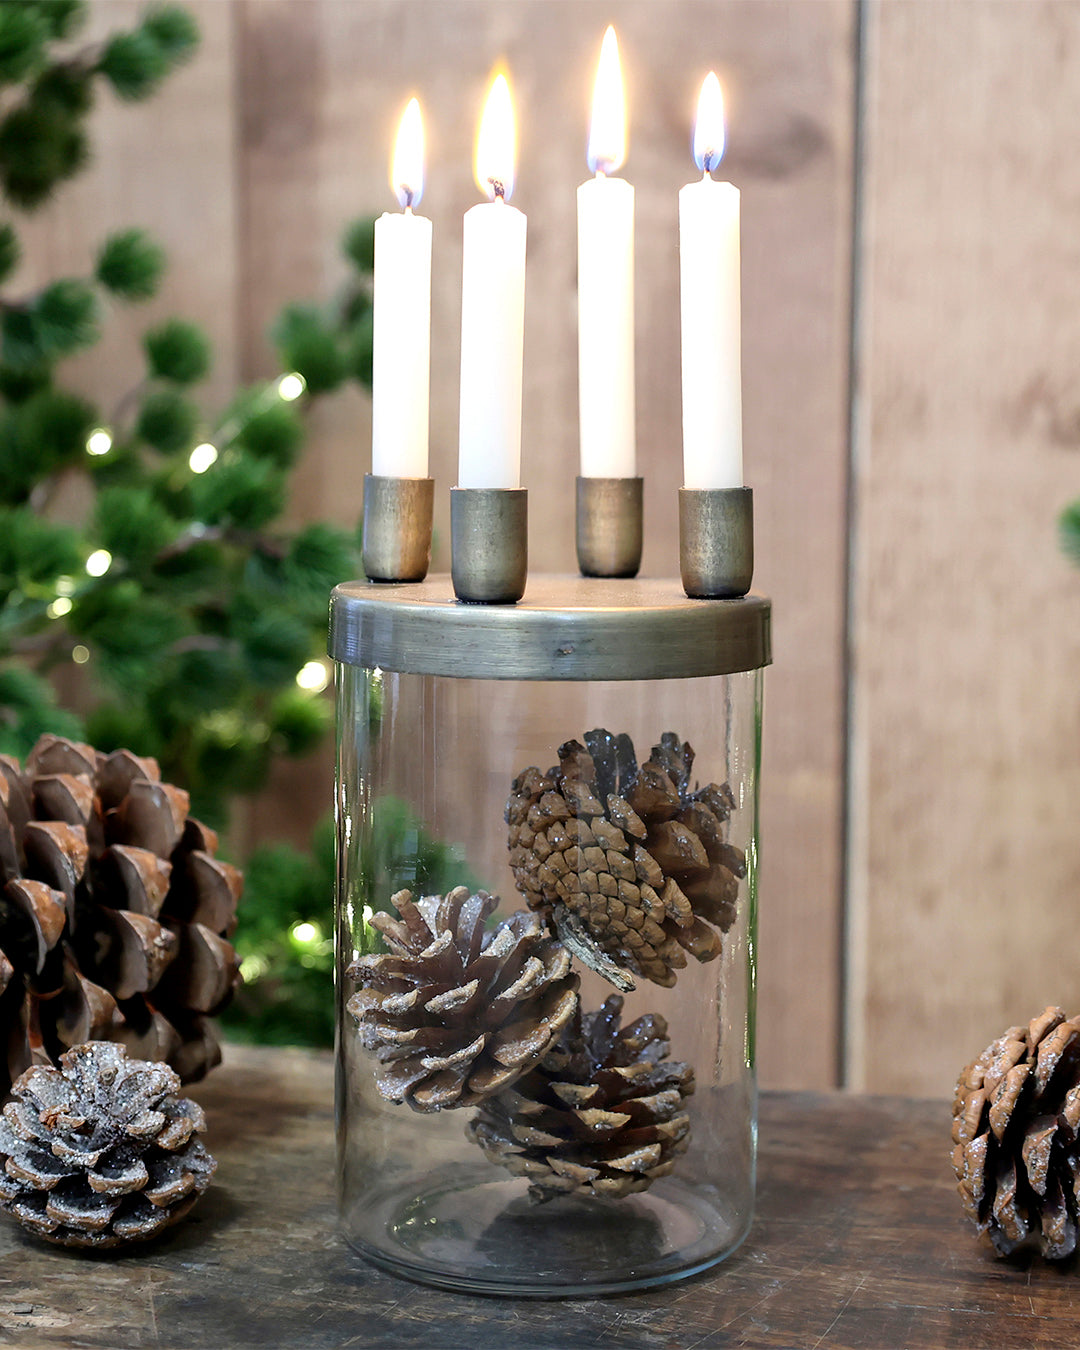 Kerzenhalter für 4 Kerzen mit Glasbehälter – Grapes Concept Store